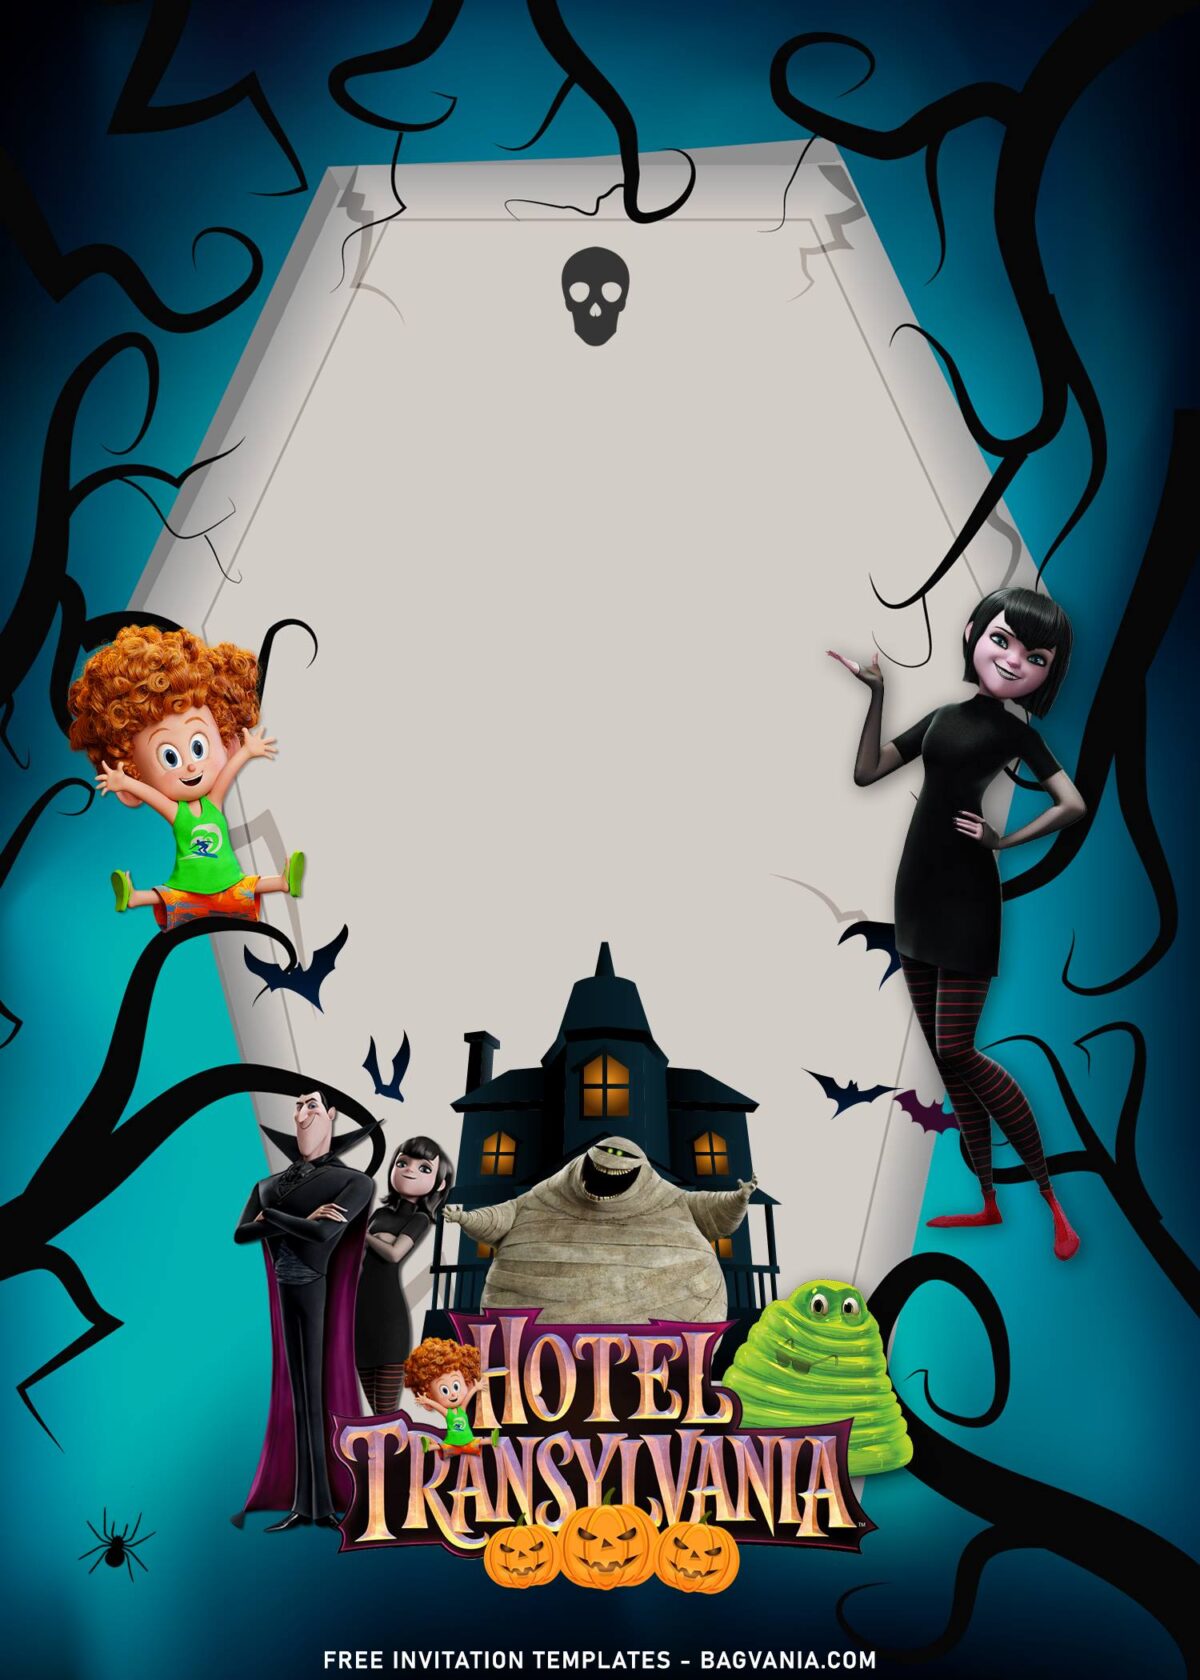 11+ Hotel Transylvania Birthday Invitation Templates with Mavis and Dracula